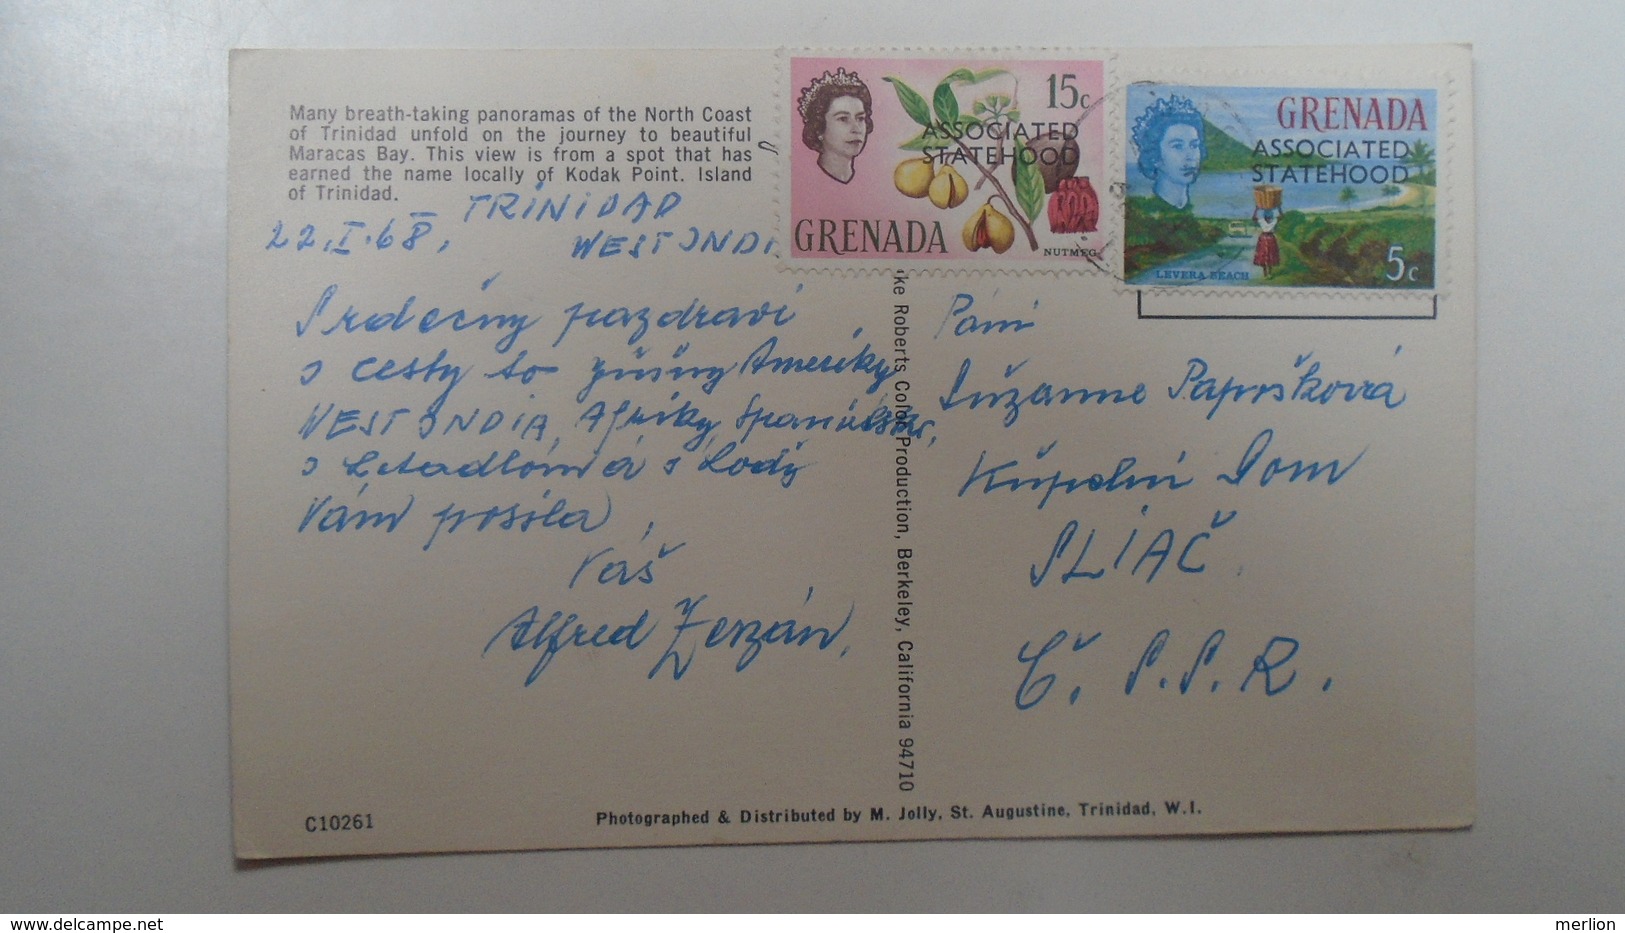 D166550 GRENADA Stamps  On Trinidad Postcard - North Coast Of Trinidad  BWI  1968 Maracas Bay- Kodak Point - Grenada